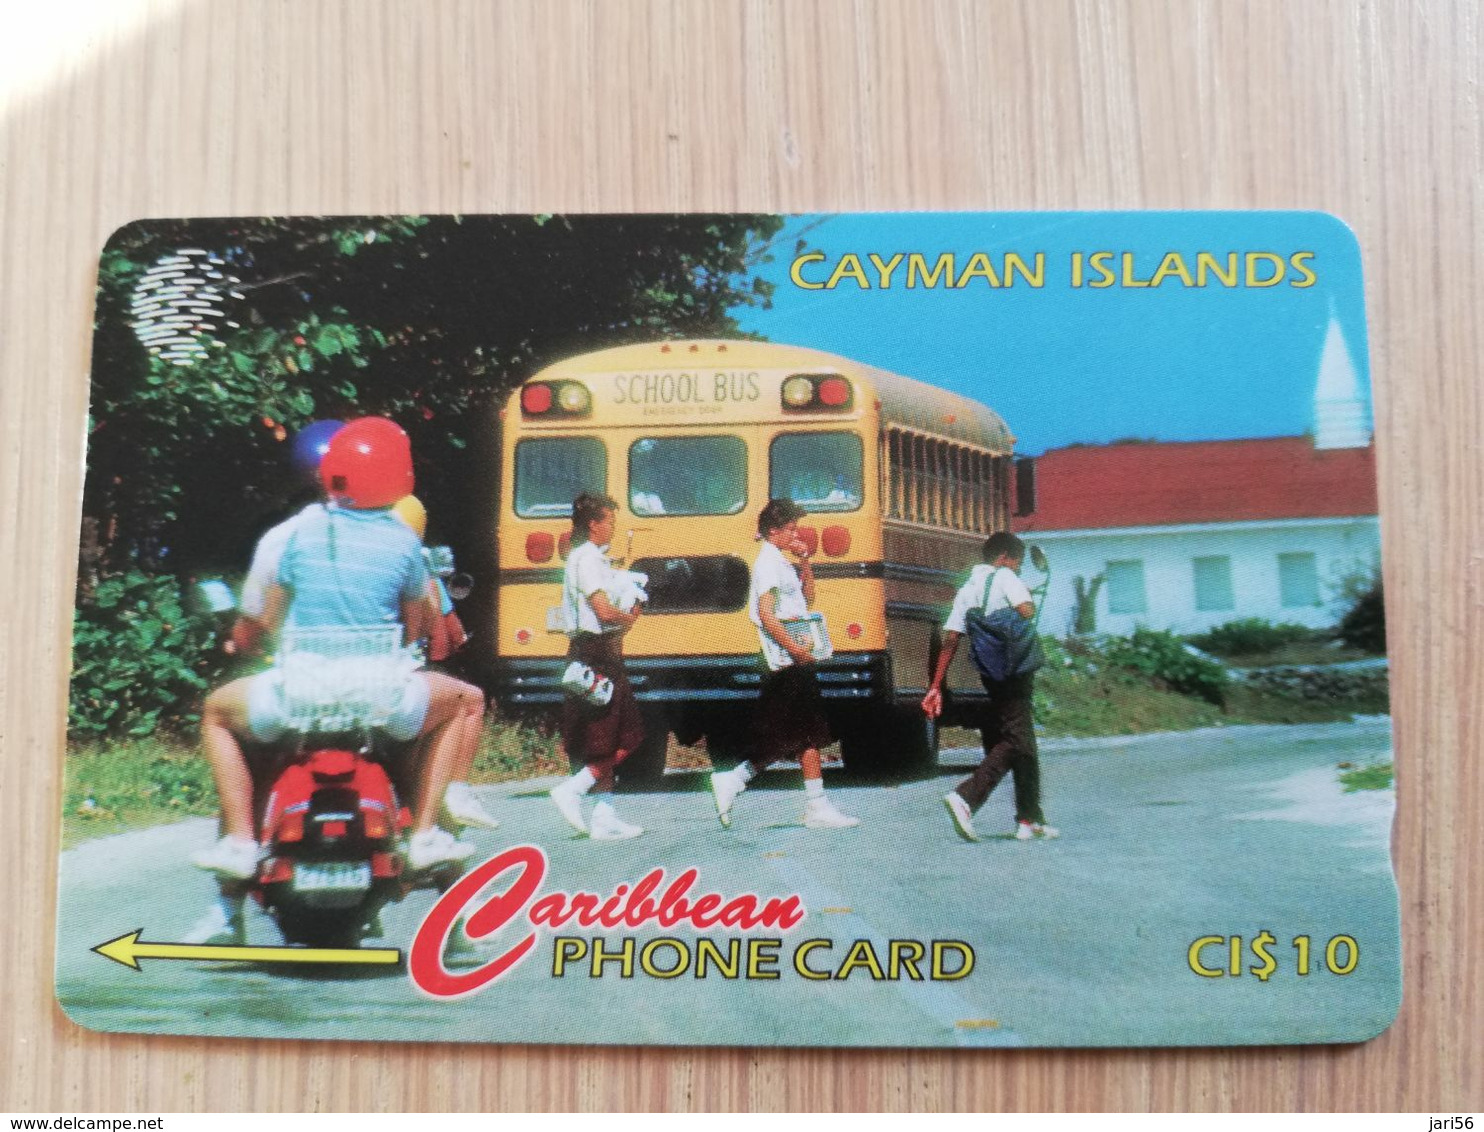 CAYMAN ISLANDS  CI $ 10,-  CAY-163A CONTROL NR 163CCIA  SCHOOL DAY/BUS     Fine Used Card  ** 3115** - Iles Cayman